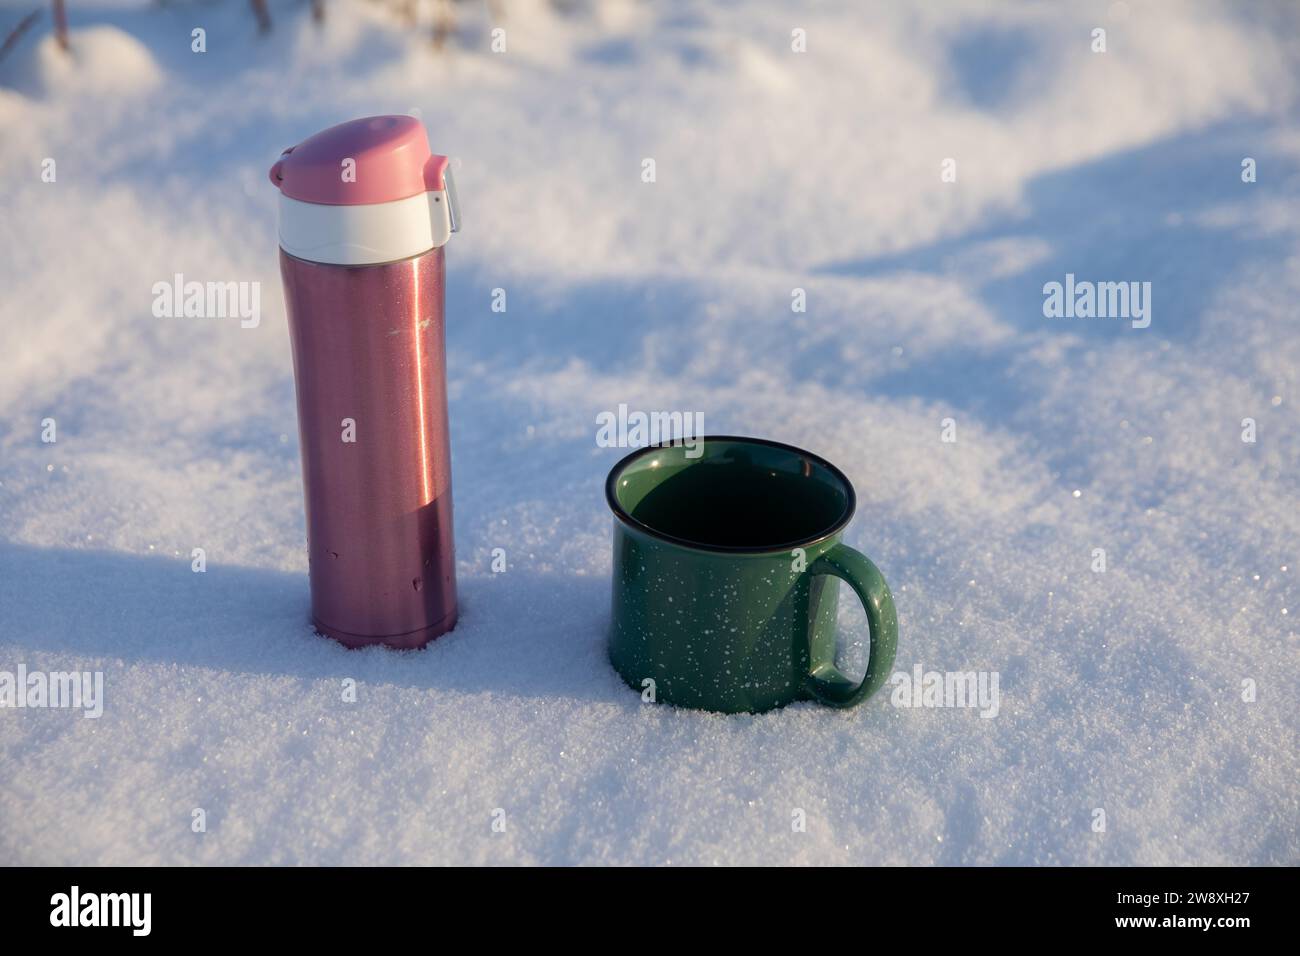 Nahaufnahme von zwei Tassen, die an einem Wintertag im Schnee stehen. Stockfoto